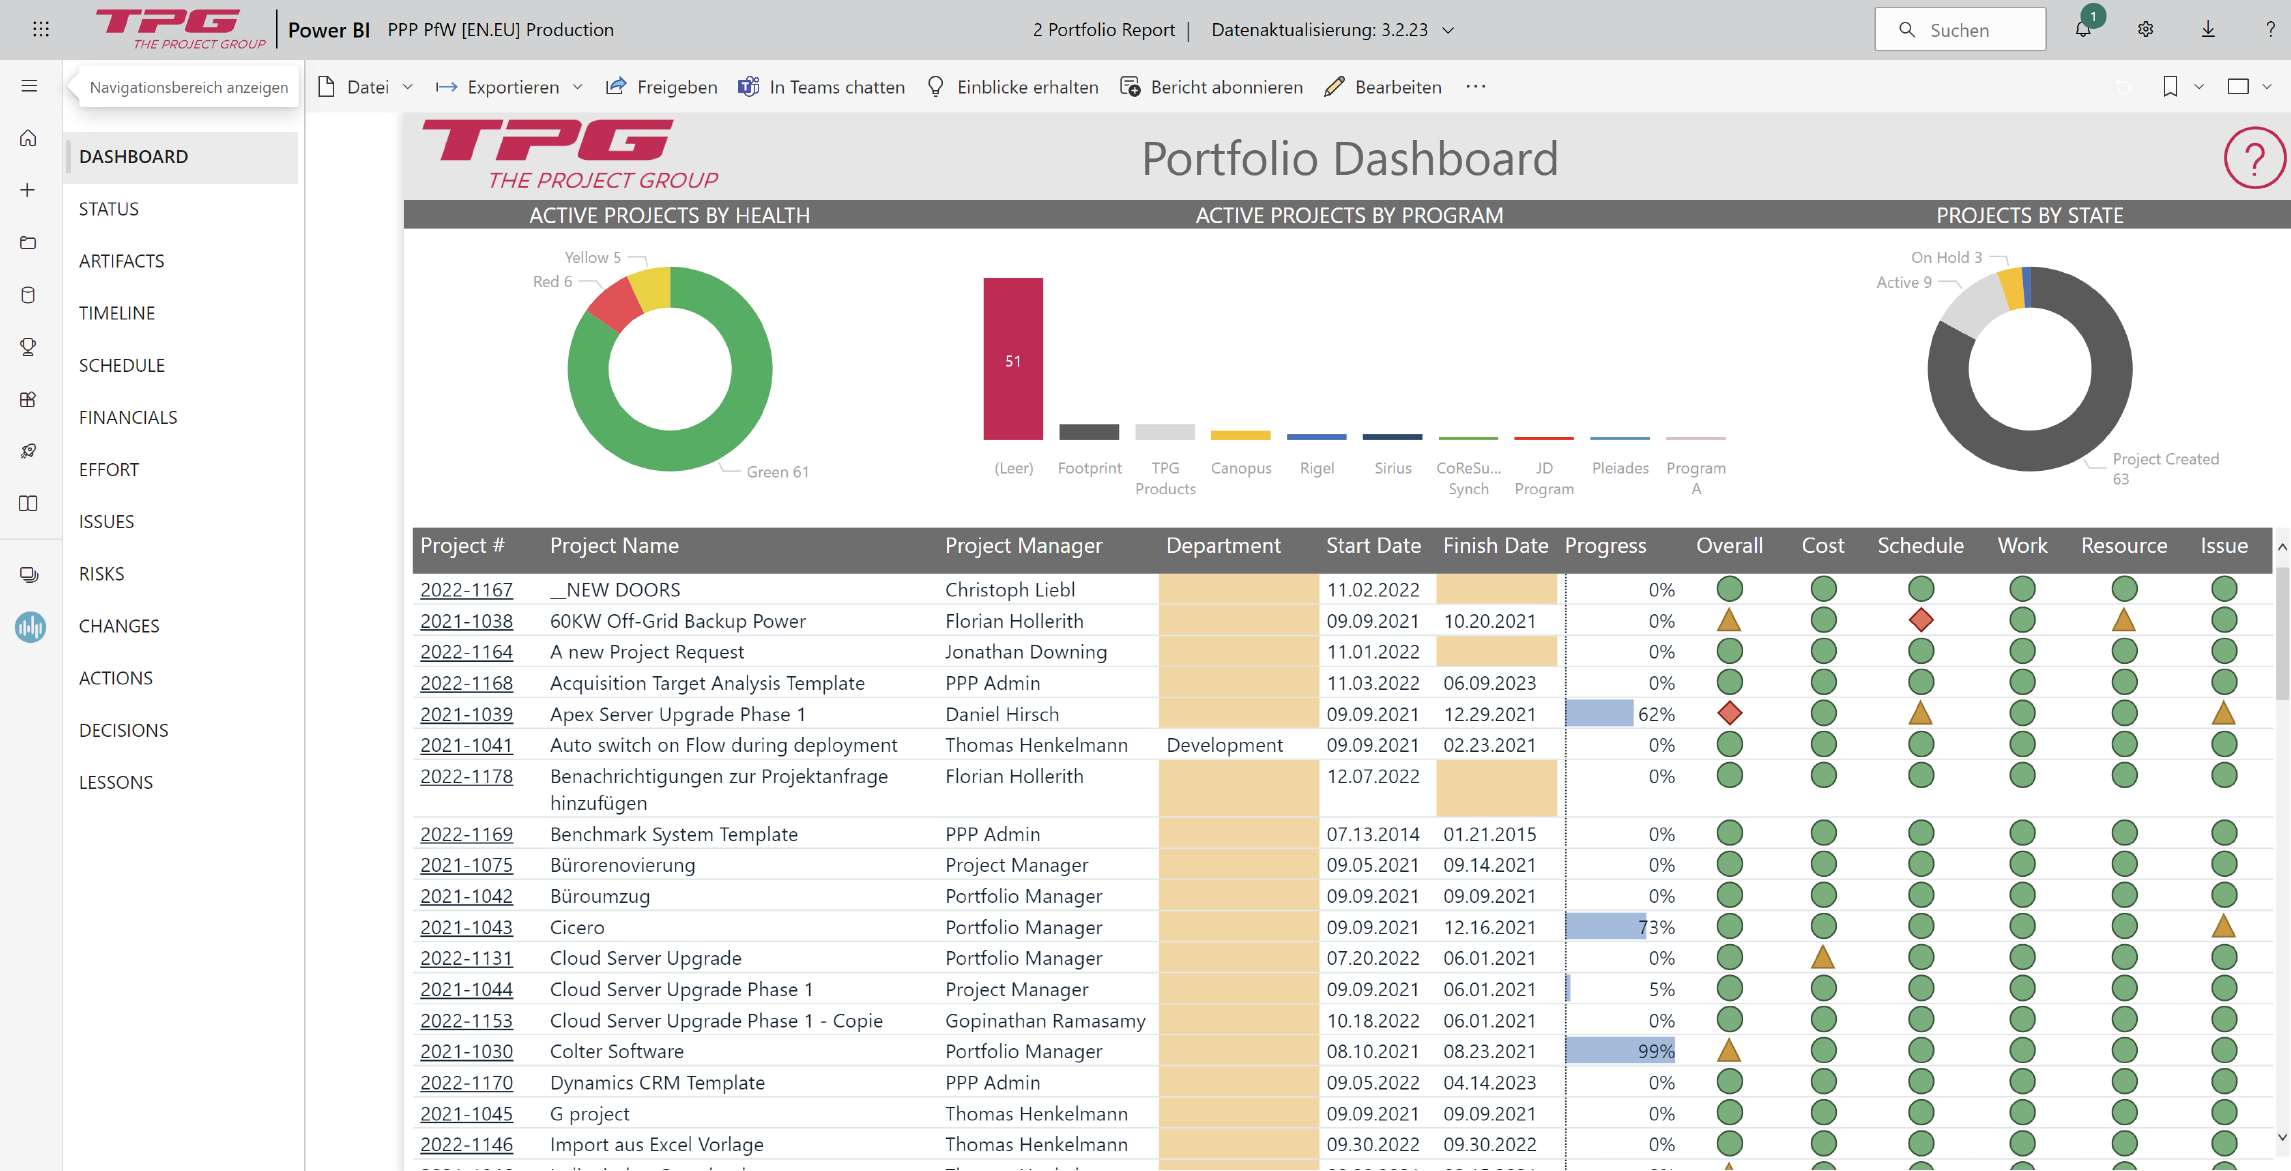 Power Platform Project Management - Portfolio Dashboard